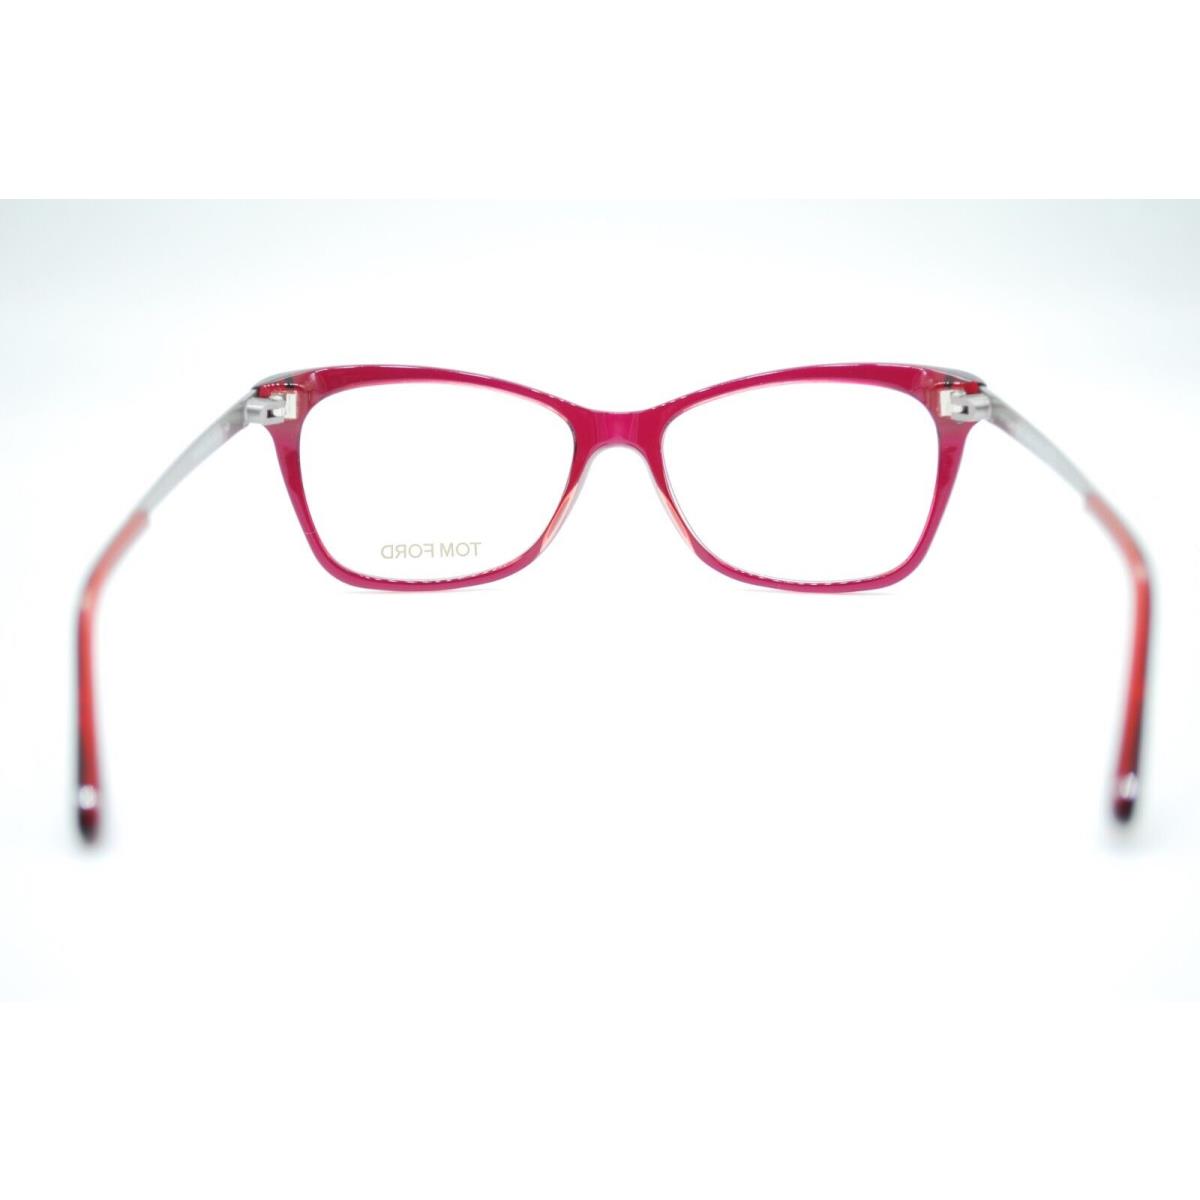 Tom Ford eyeglasses  - Frame: Red 3